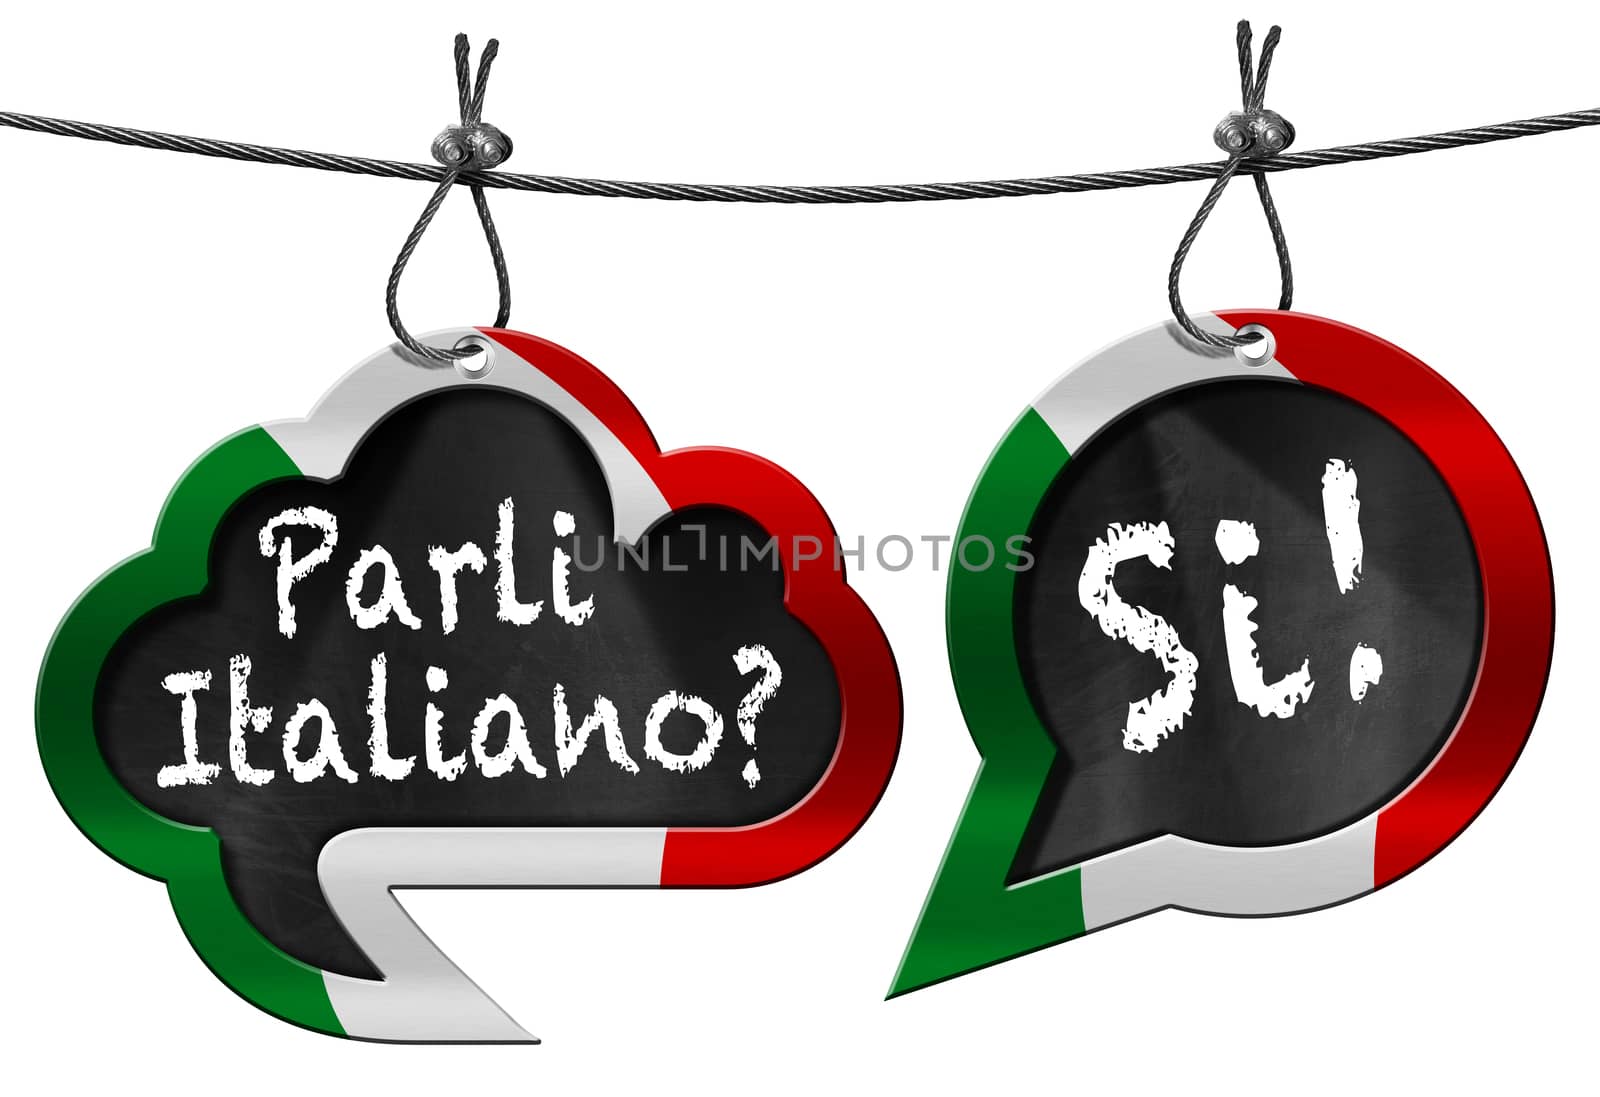 Parli Italiano - Speech Bubbles by catalby